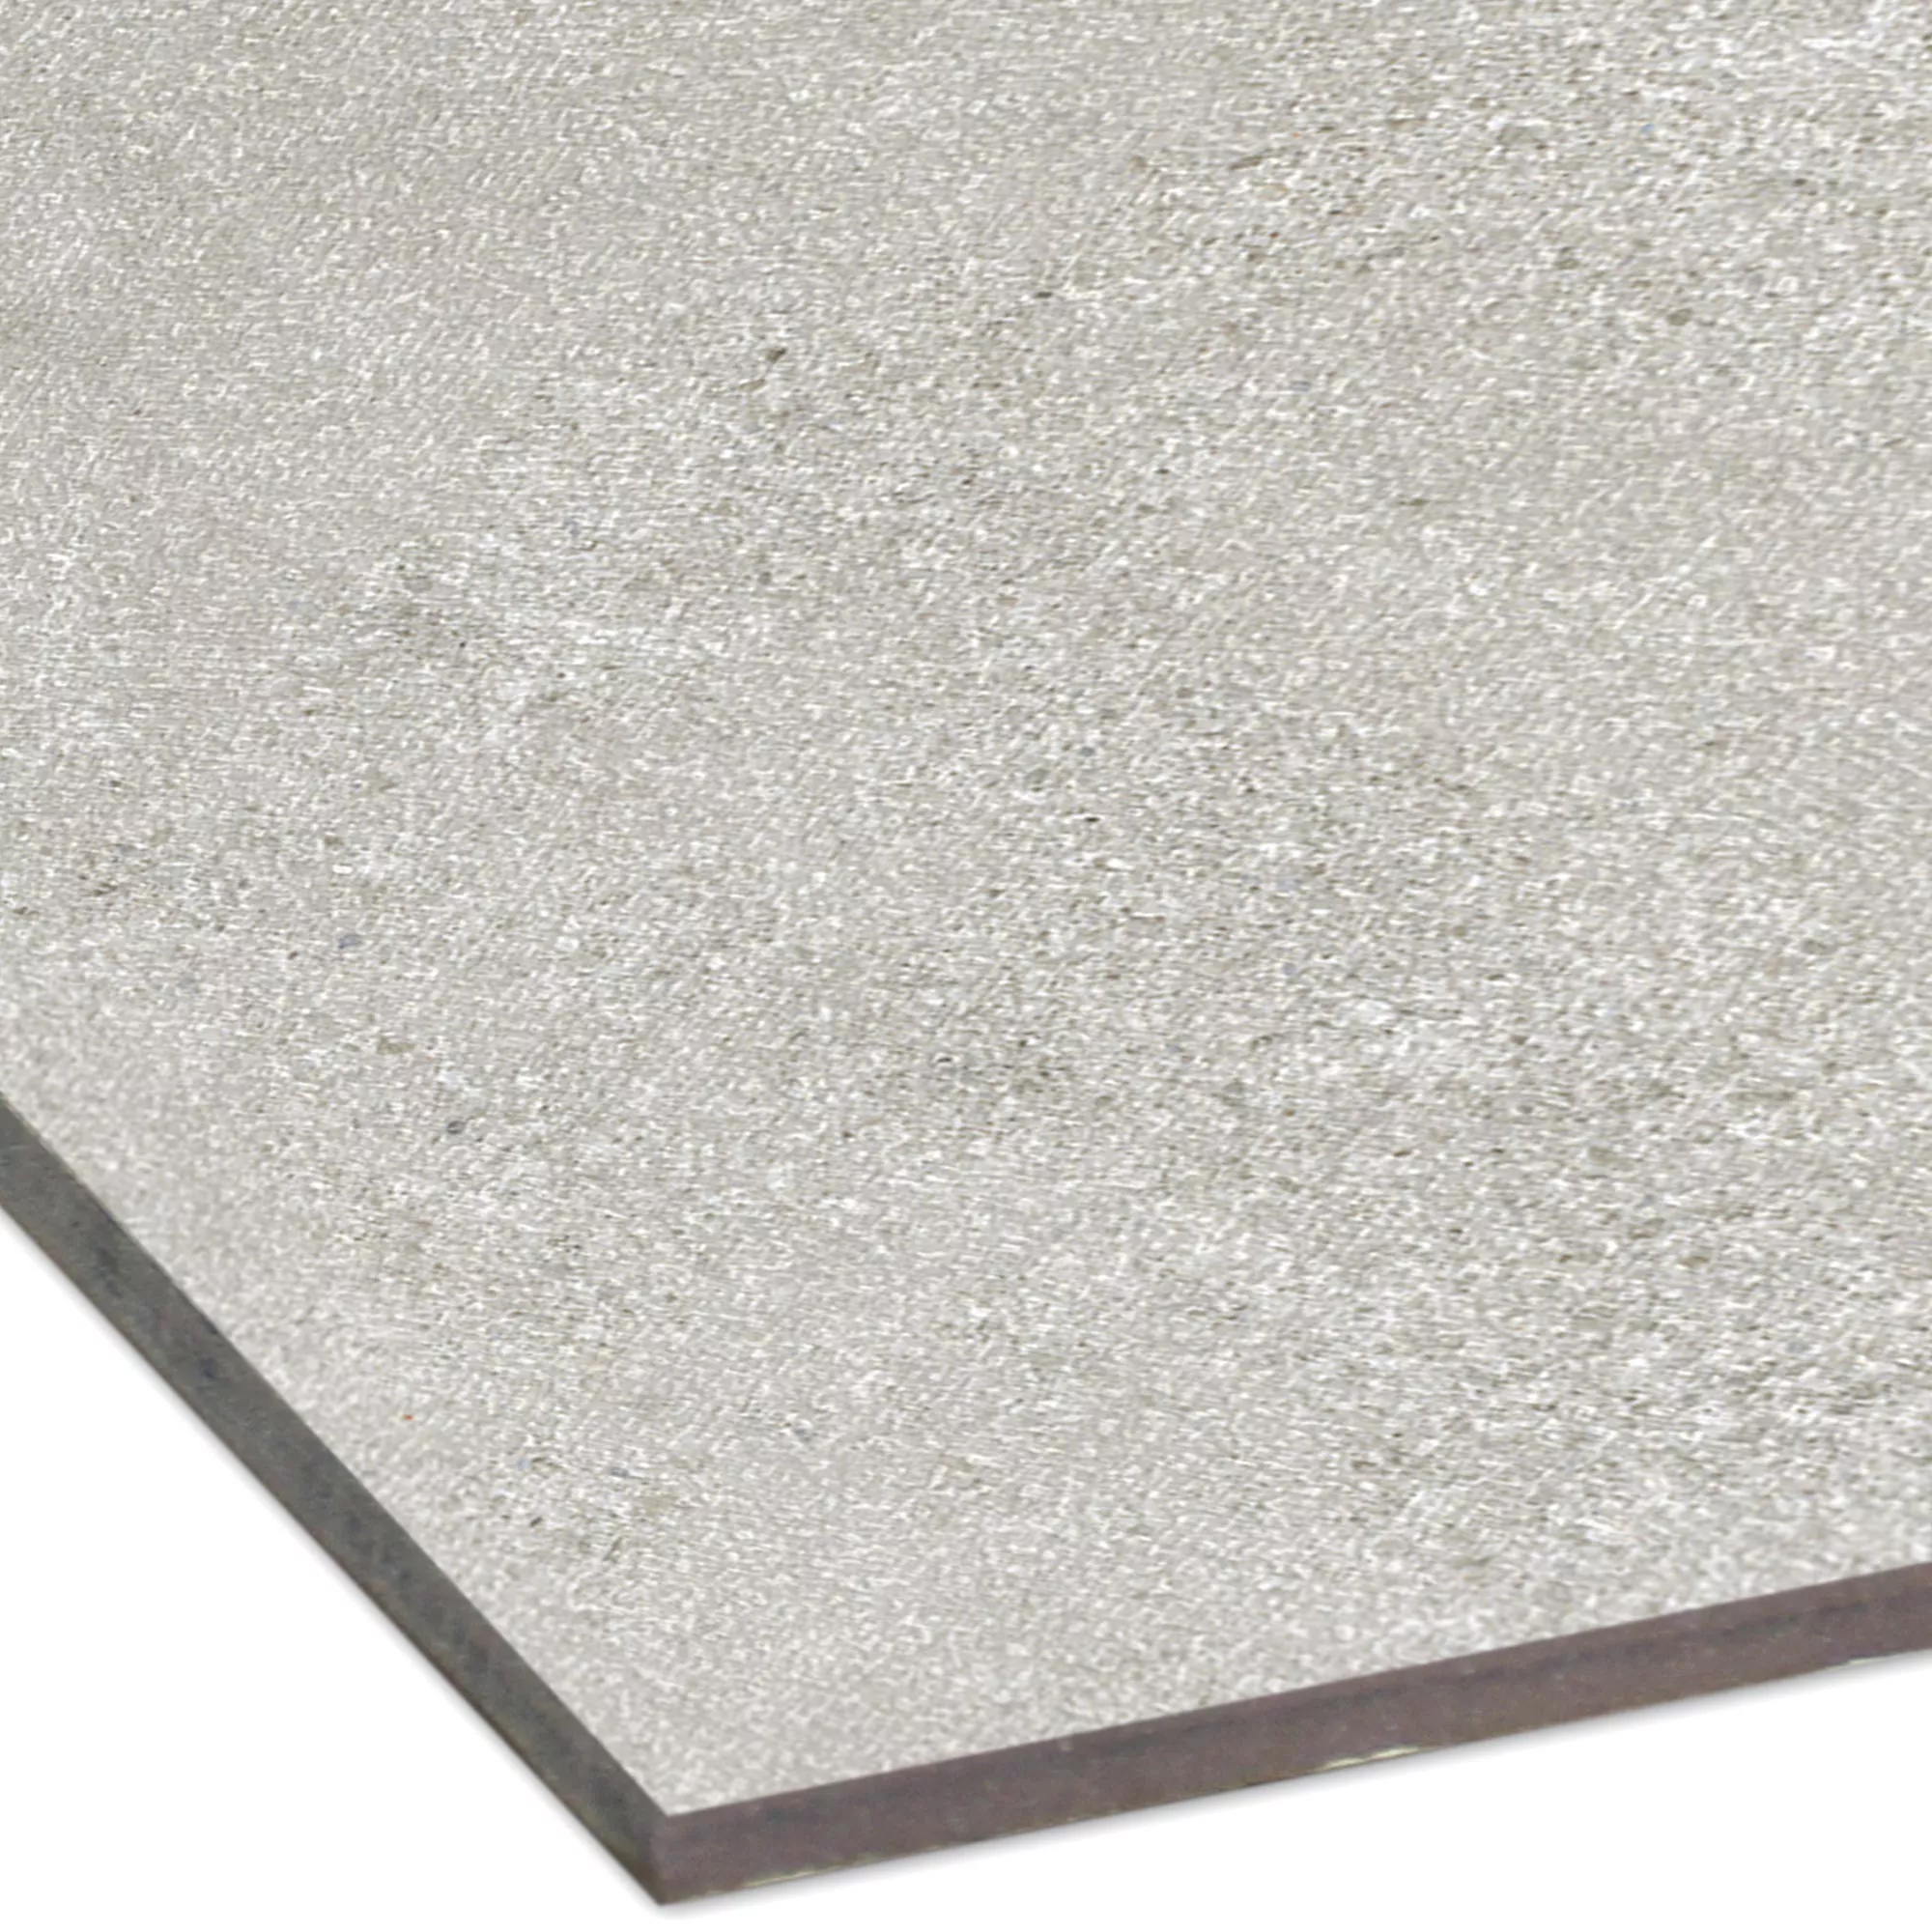 Sample Floor Tiles Galilea Unglazed R10B Grey 60x60cm